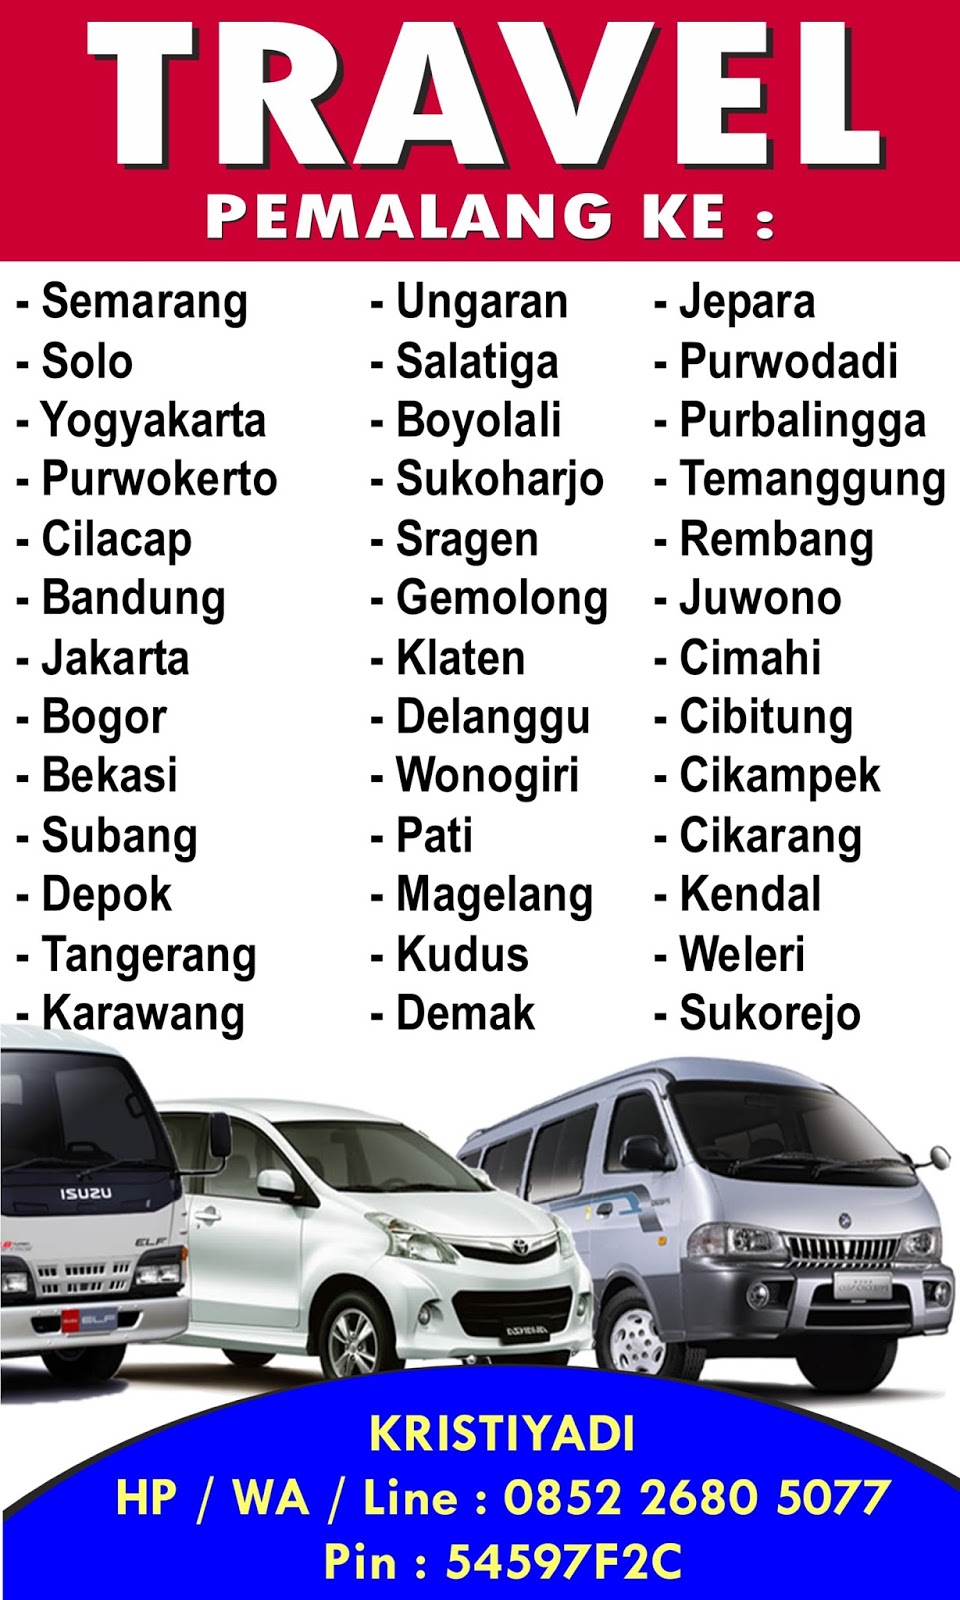 Travel dari Pemalang Ke Jakarta, Solo, Yogya, Semarang